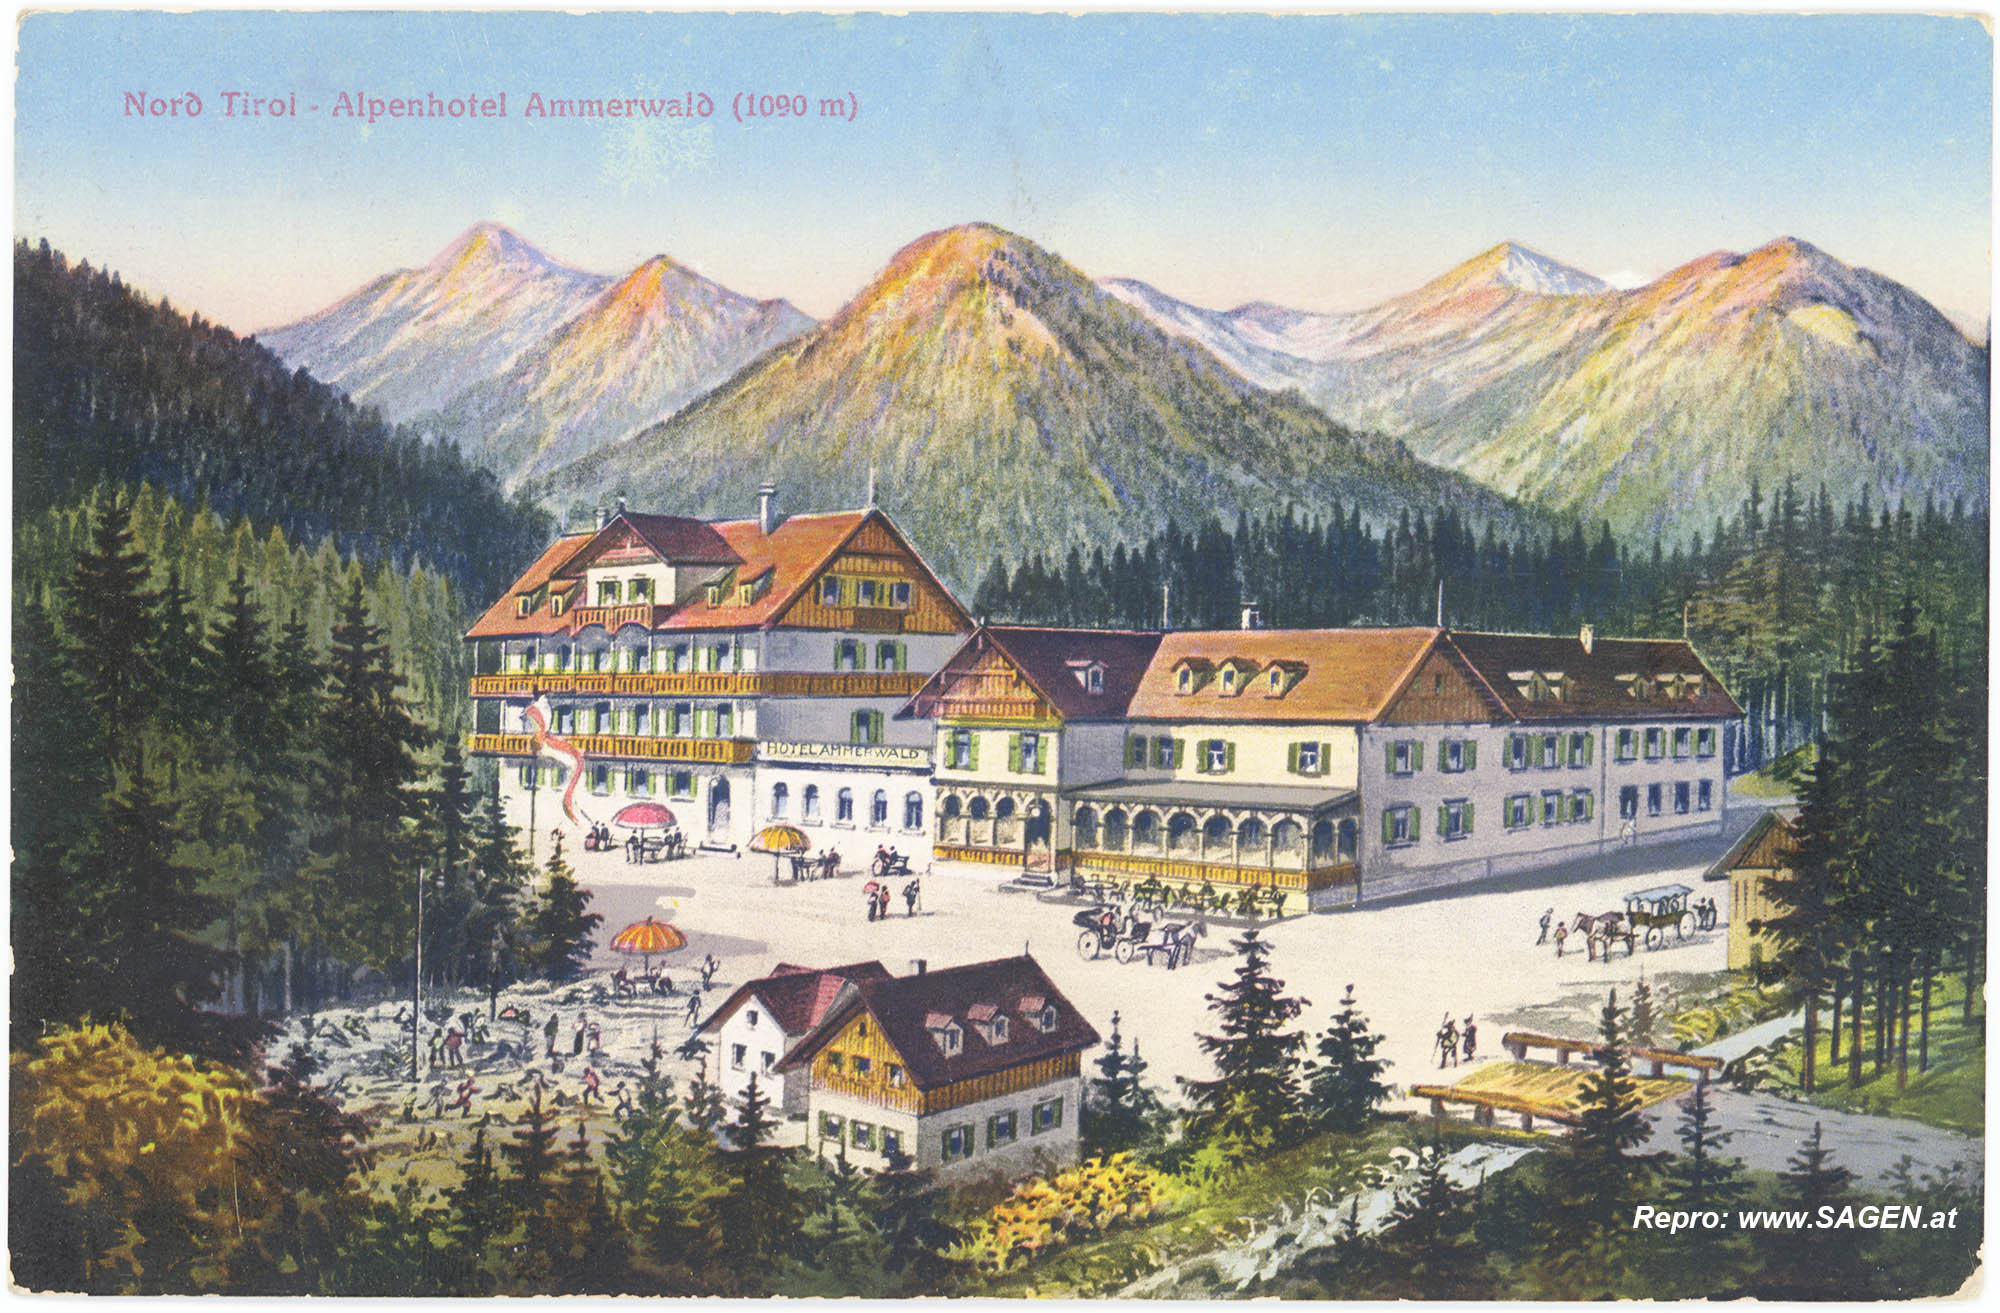 Alpenhotel Ammerwald, Tirol